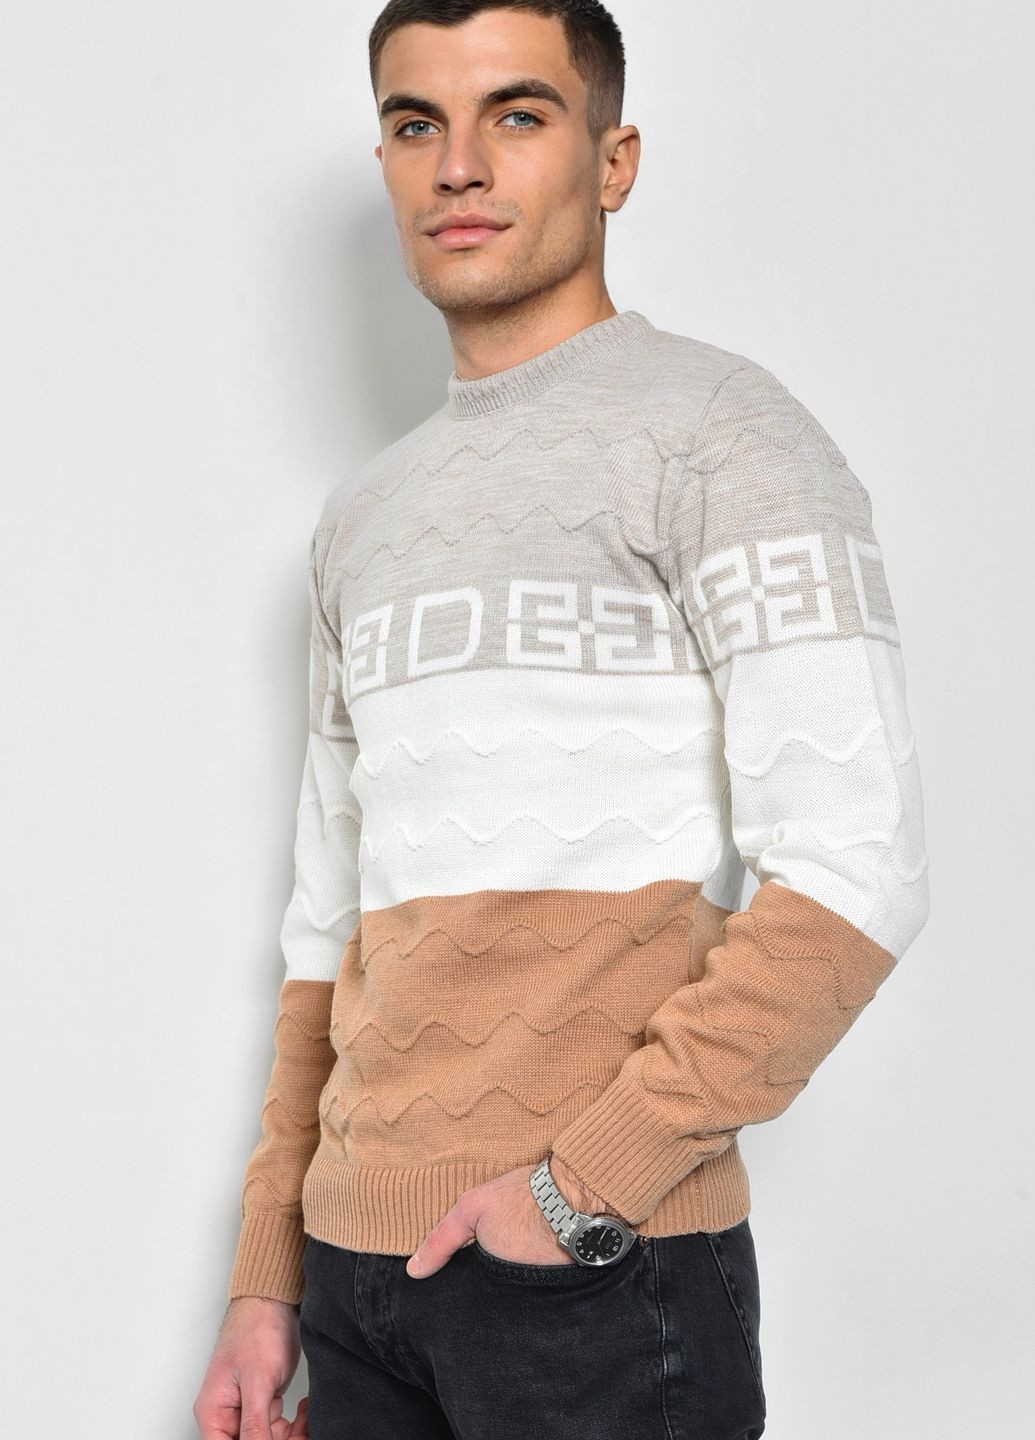 Світло-коричневий демісезонний светр чоловічий світло-коричневого кольору пуловер Let's Shop